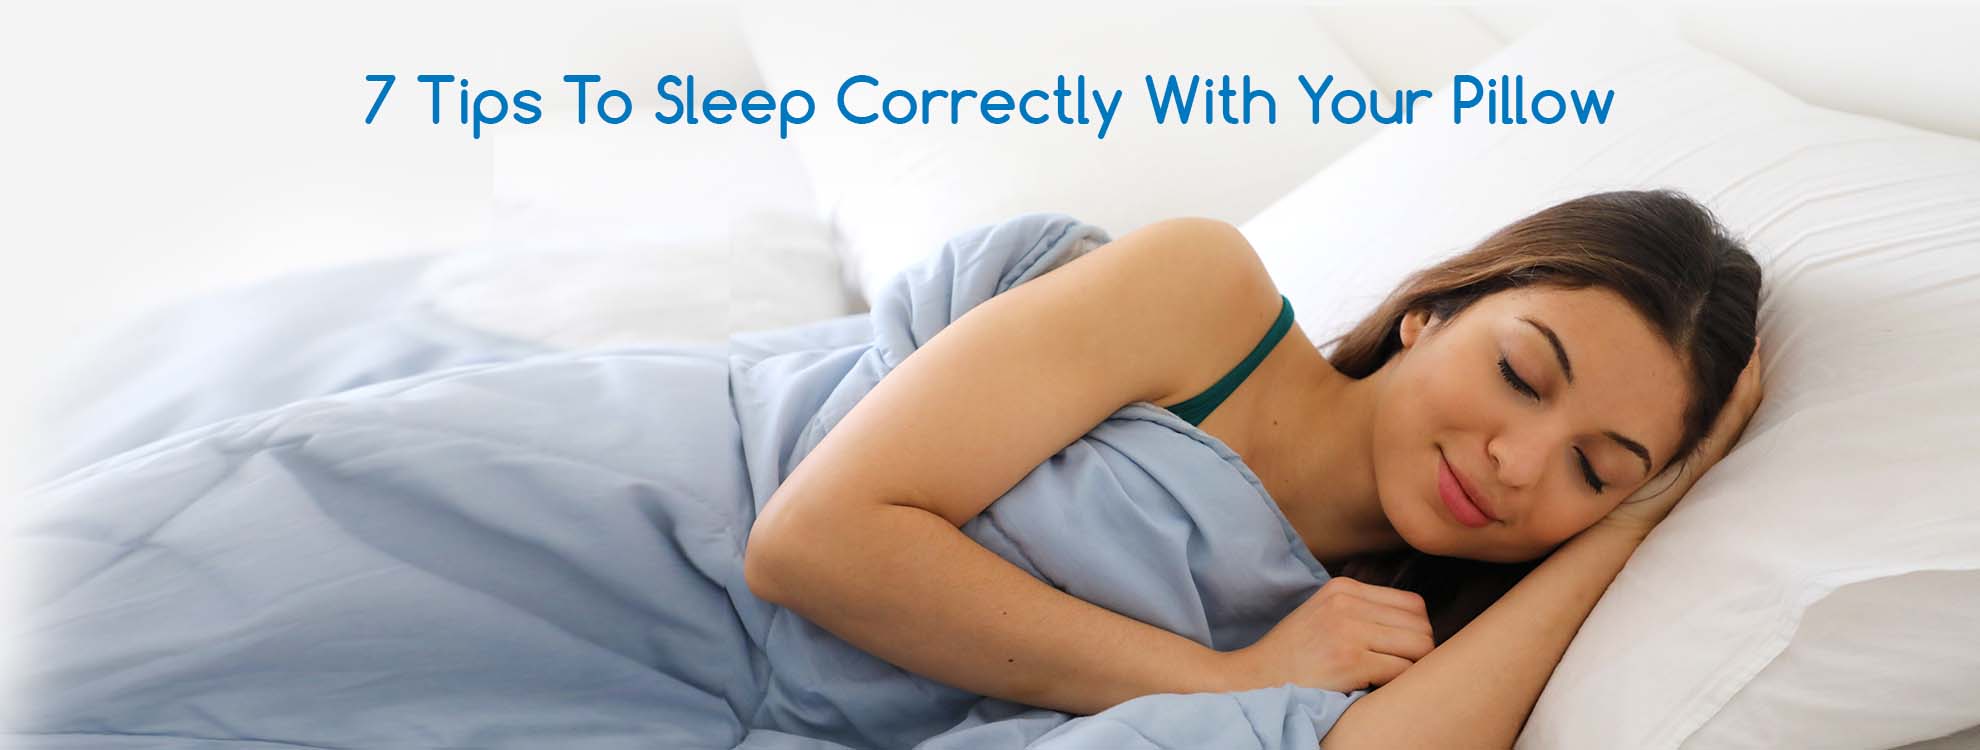 http://www.durfi.com/cdn/shop/articles/How_to_properly_sleep_on_a_pillow.jpg?v=1687939795